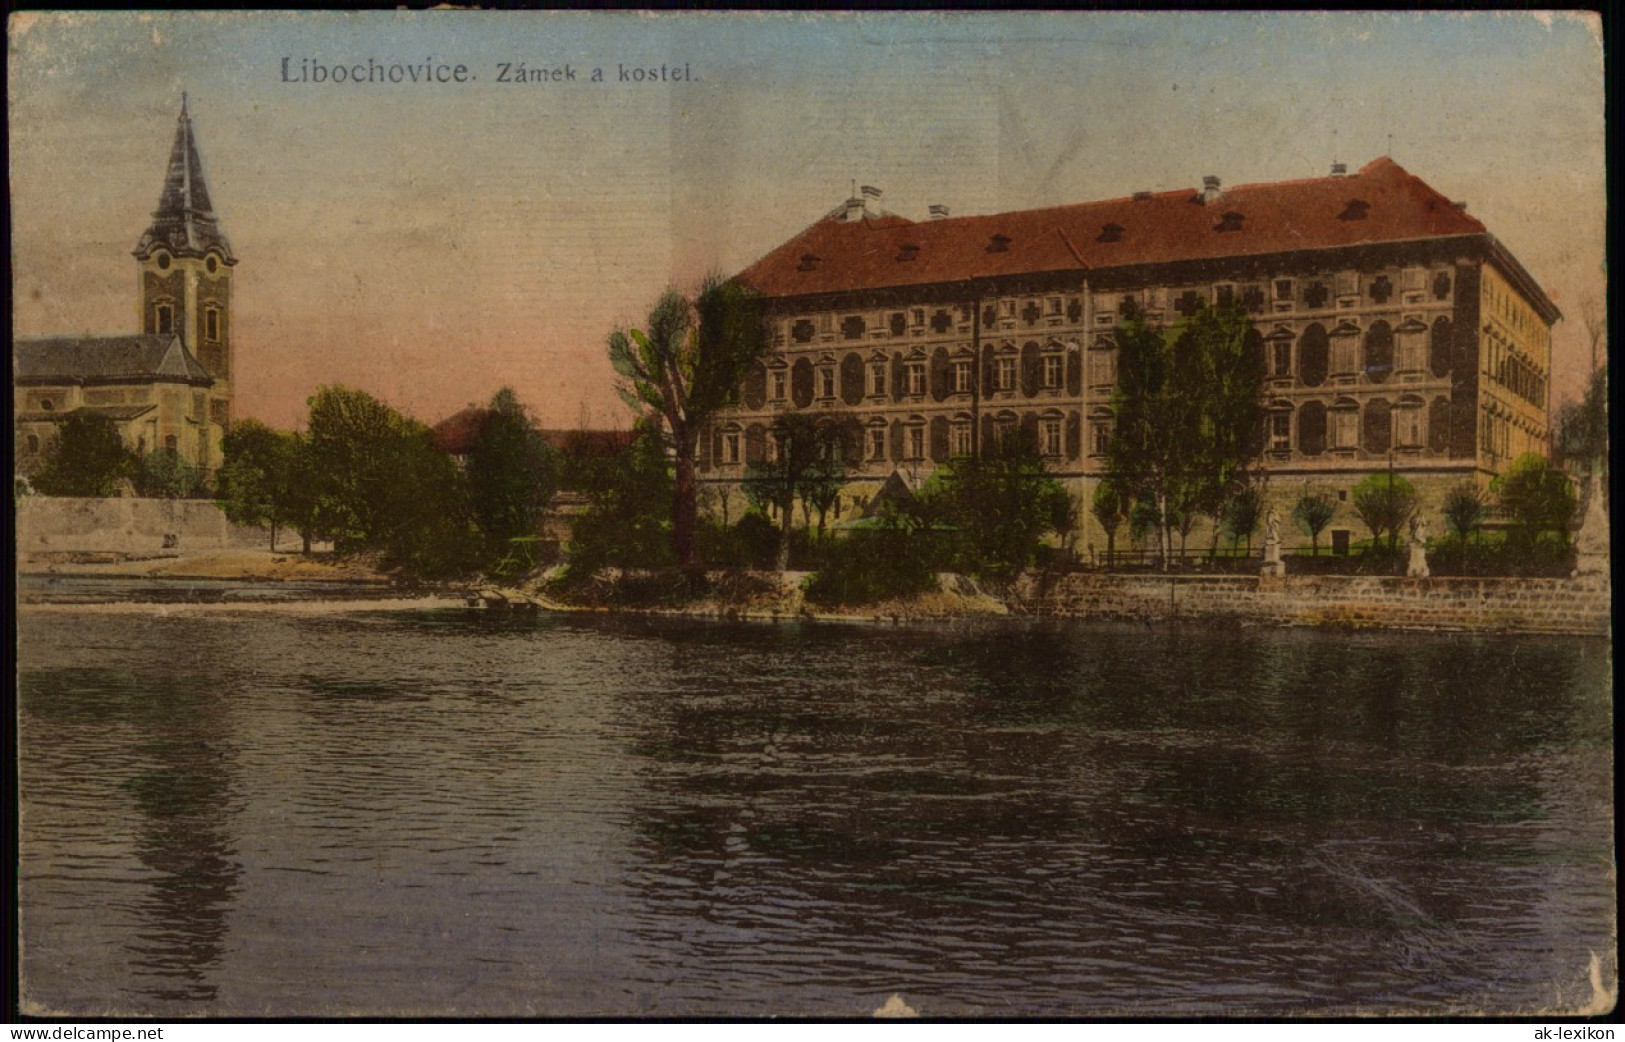 Postcard Libochovice Zámek A Kostel. 1923 - República Checa